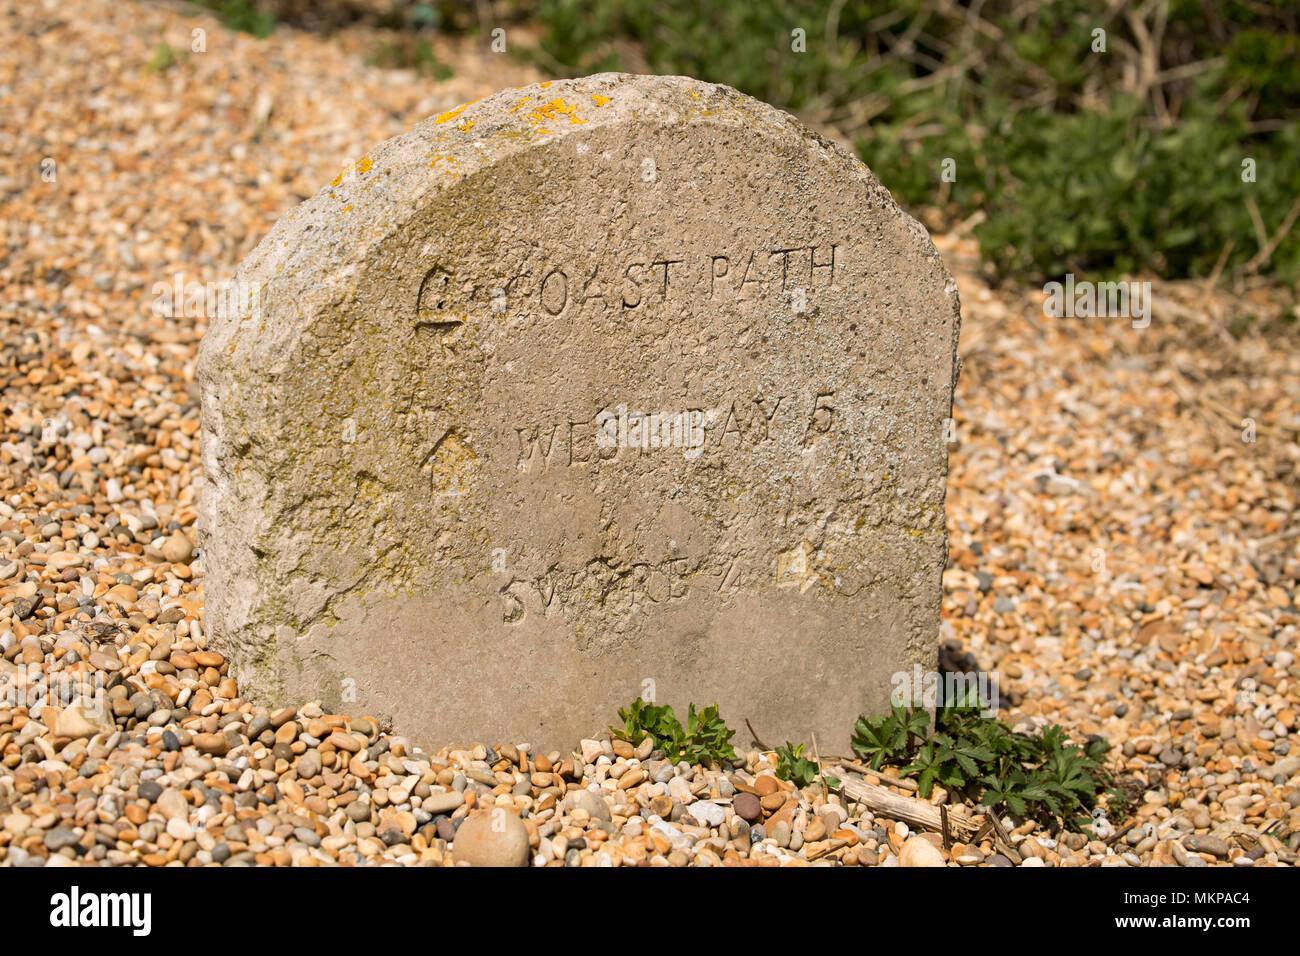 Una piedra cerca de West Bexington marcador de distancia a lo largo de un sendero detrás de Cesil beach en Dorset, Inglaterra indicando una distancia de 5 millas al oeste de la bahía. Foto de stock